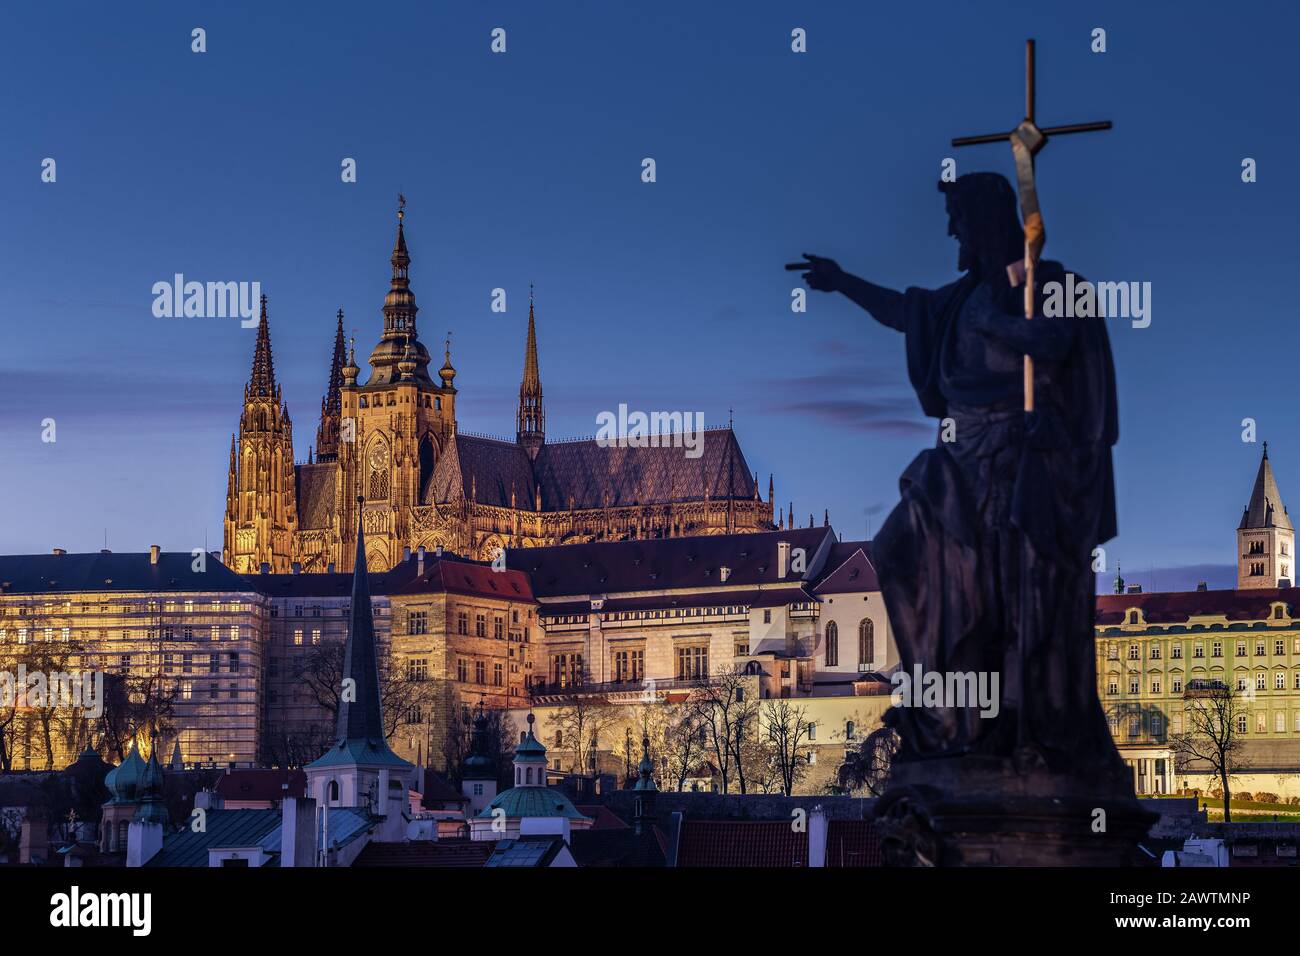 Prague, République tchèque - Cathédrale Lumineuse de St.Vitus au crépuscule avec ciel bleu clair pris du pont Charles pendant une nuit d'hiver. Statue I hors foyer Banque D'Images